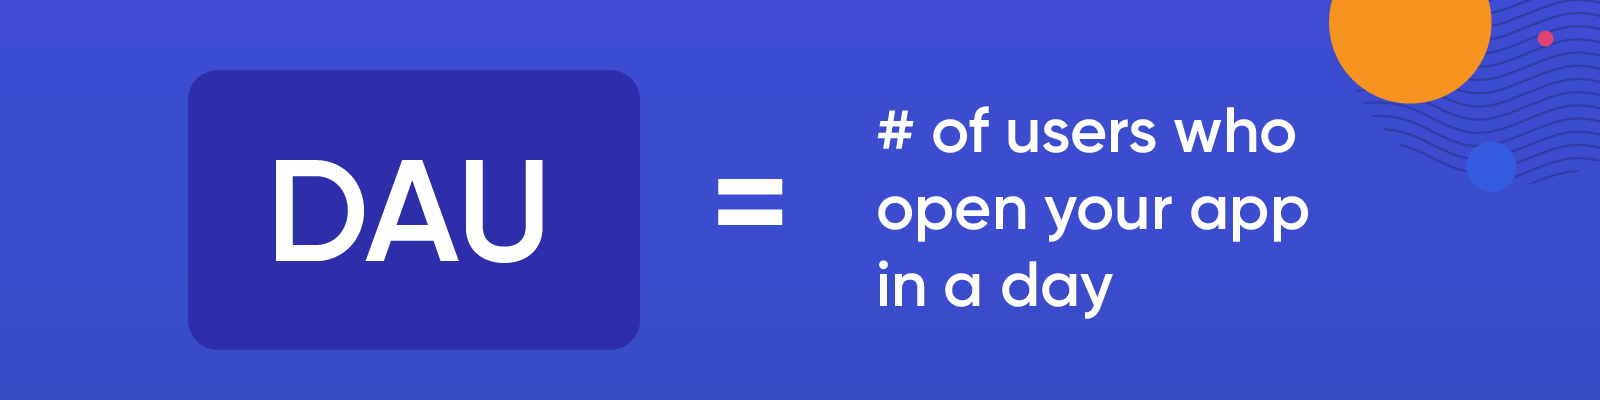 O que são DAUs? O número de usuários que abrem seu aplicativo em um dia.